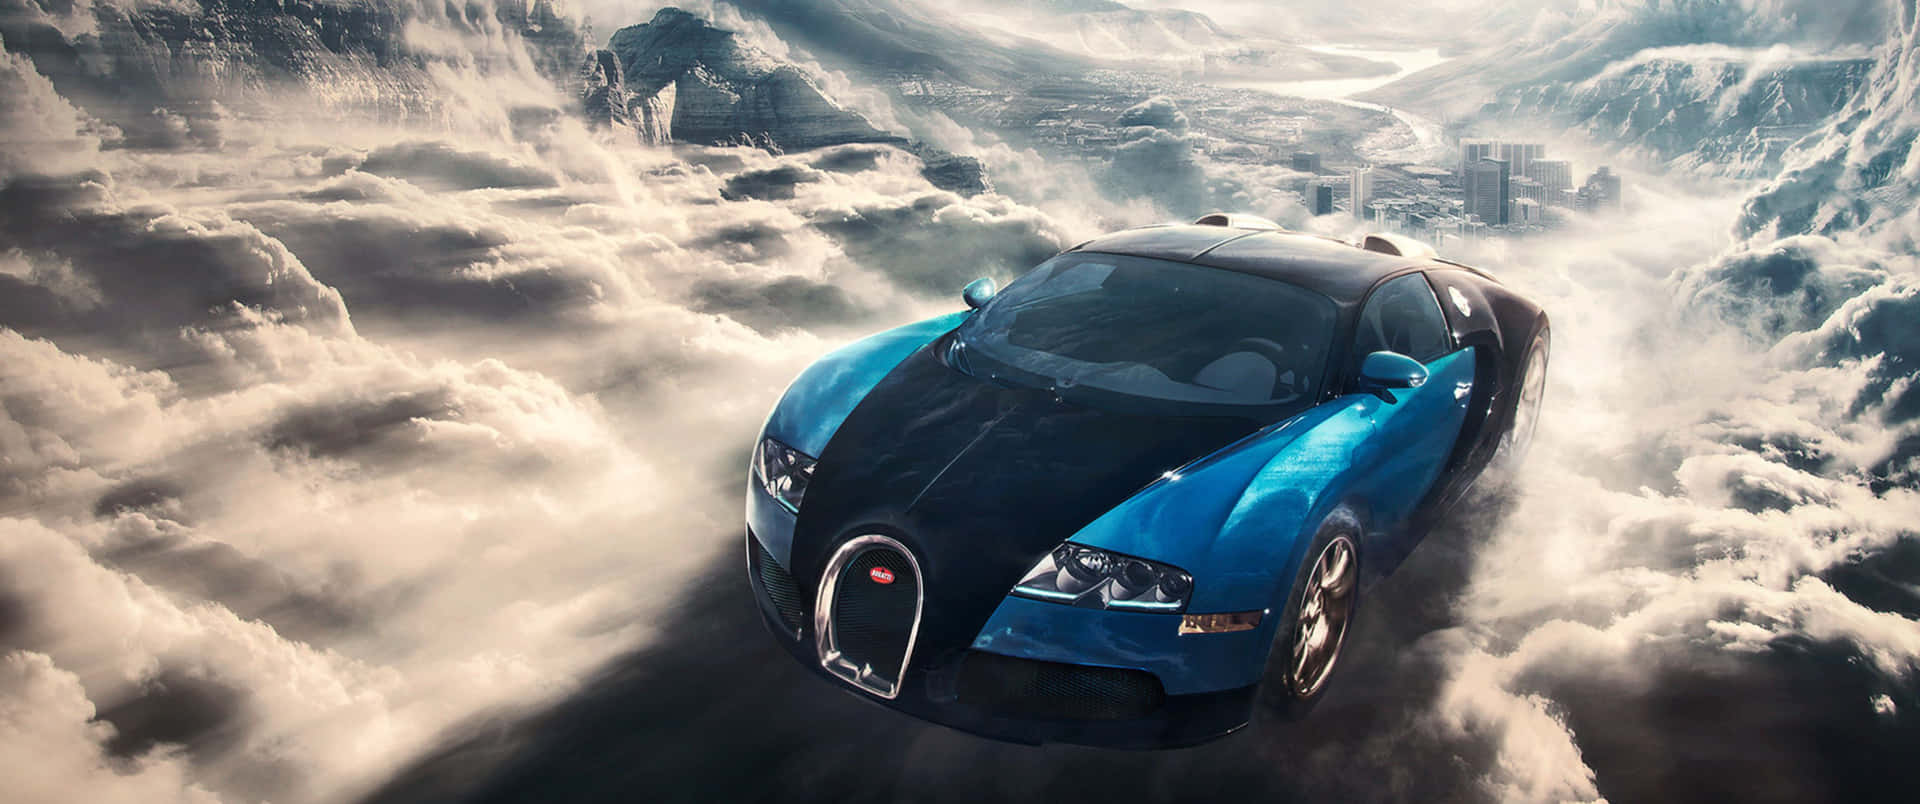 Lamaestosità E La Magnificenza Di Una Bugatti Super Sports Car